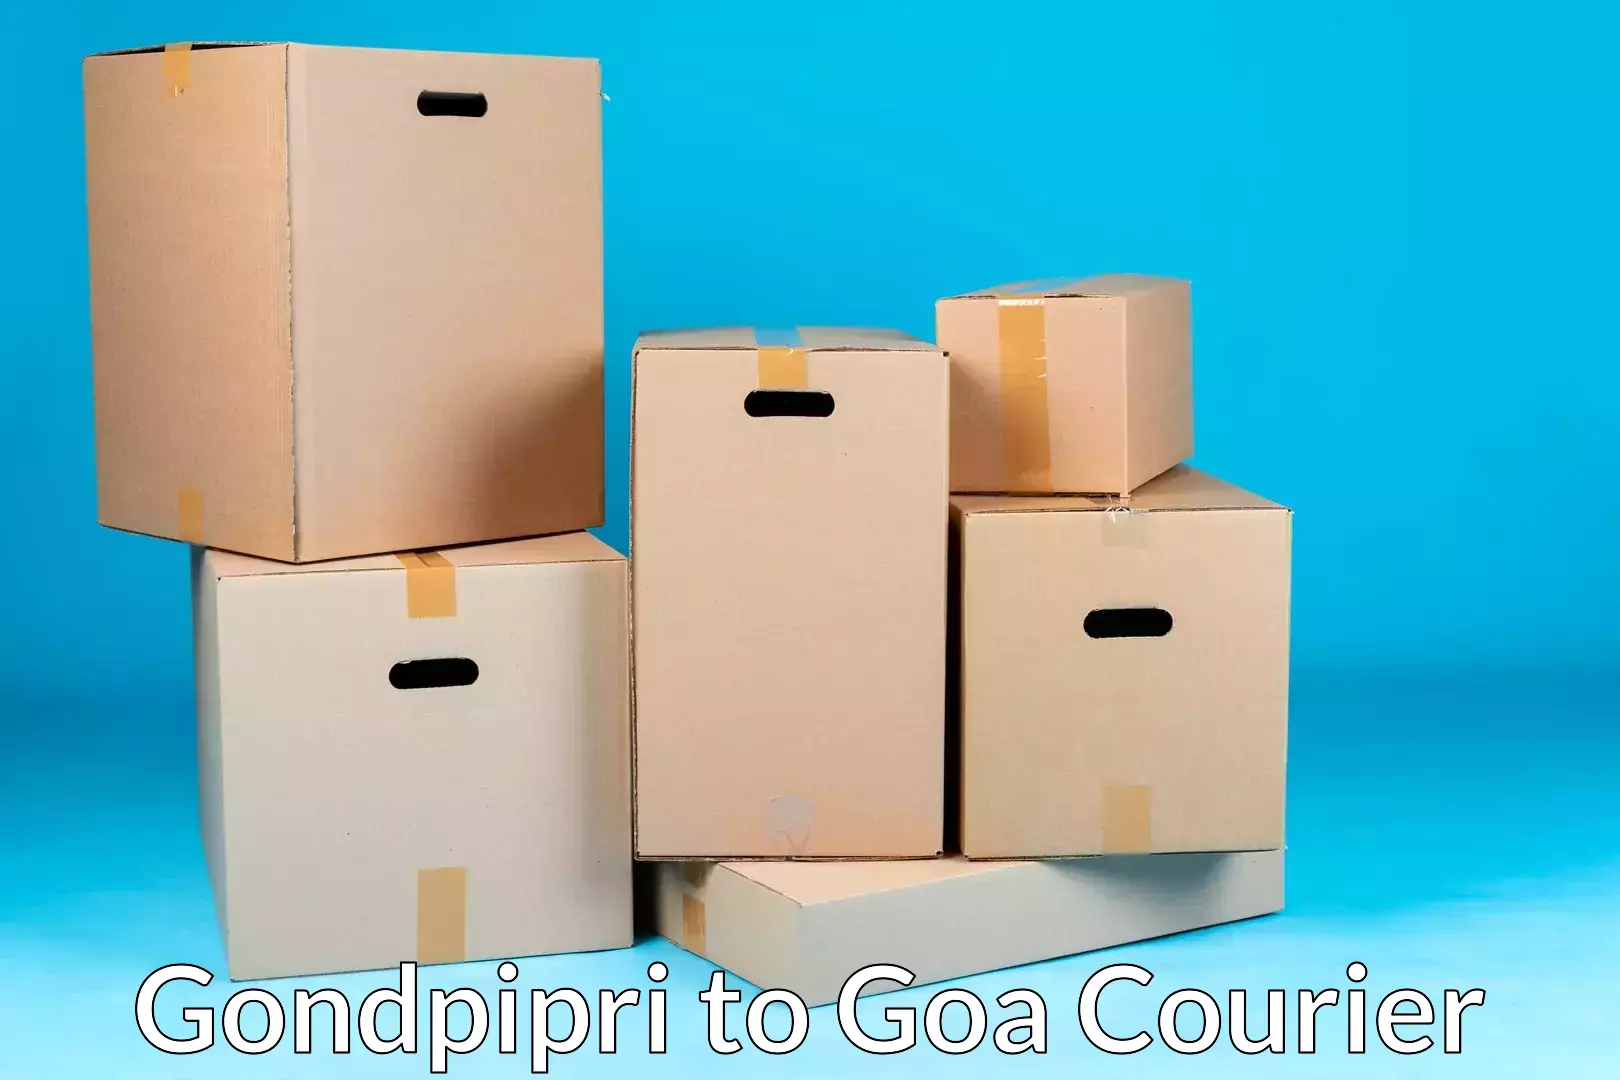 Quality relocation services Gondpipri to Goa